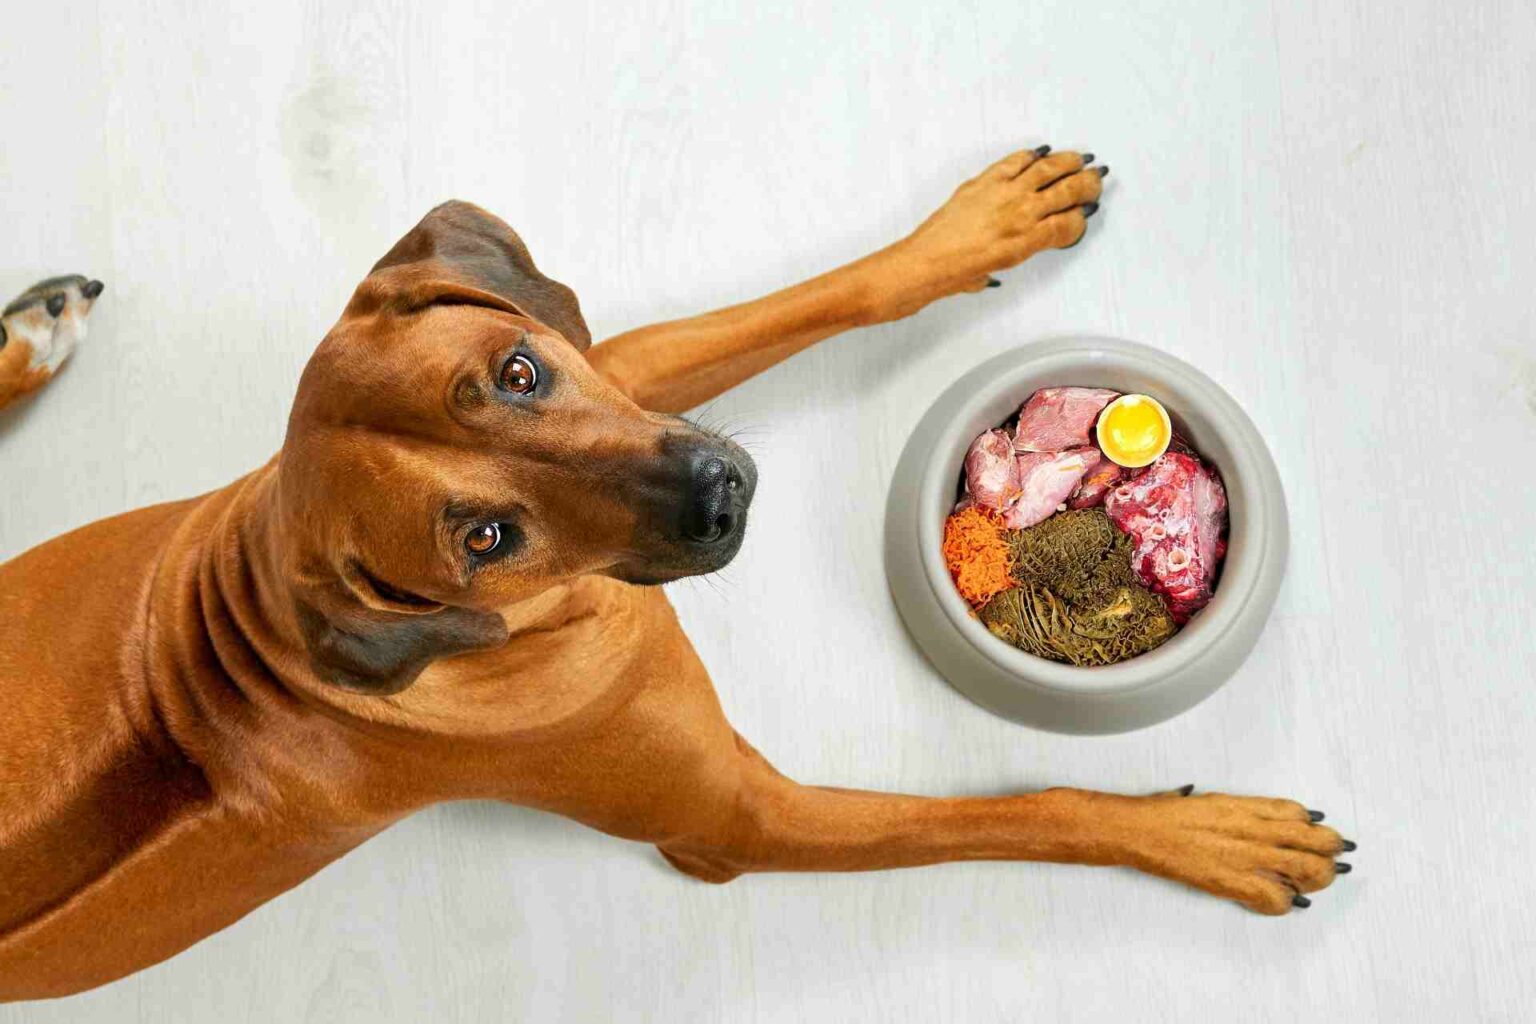 09_08_2022 - Rischio infezione da Escherichia coli multiresistente in cani alimentati con carne cruda